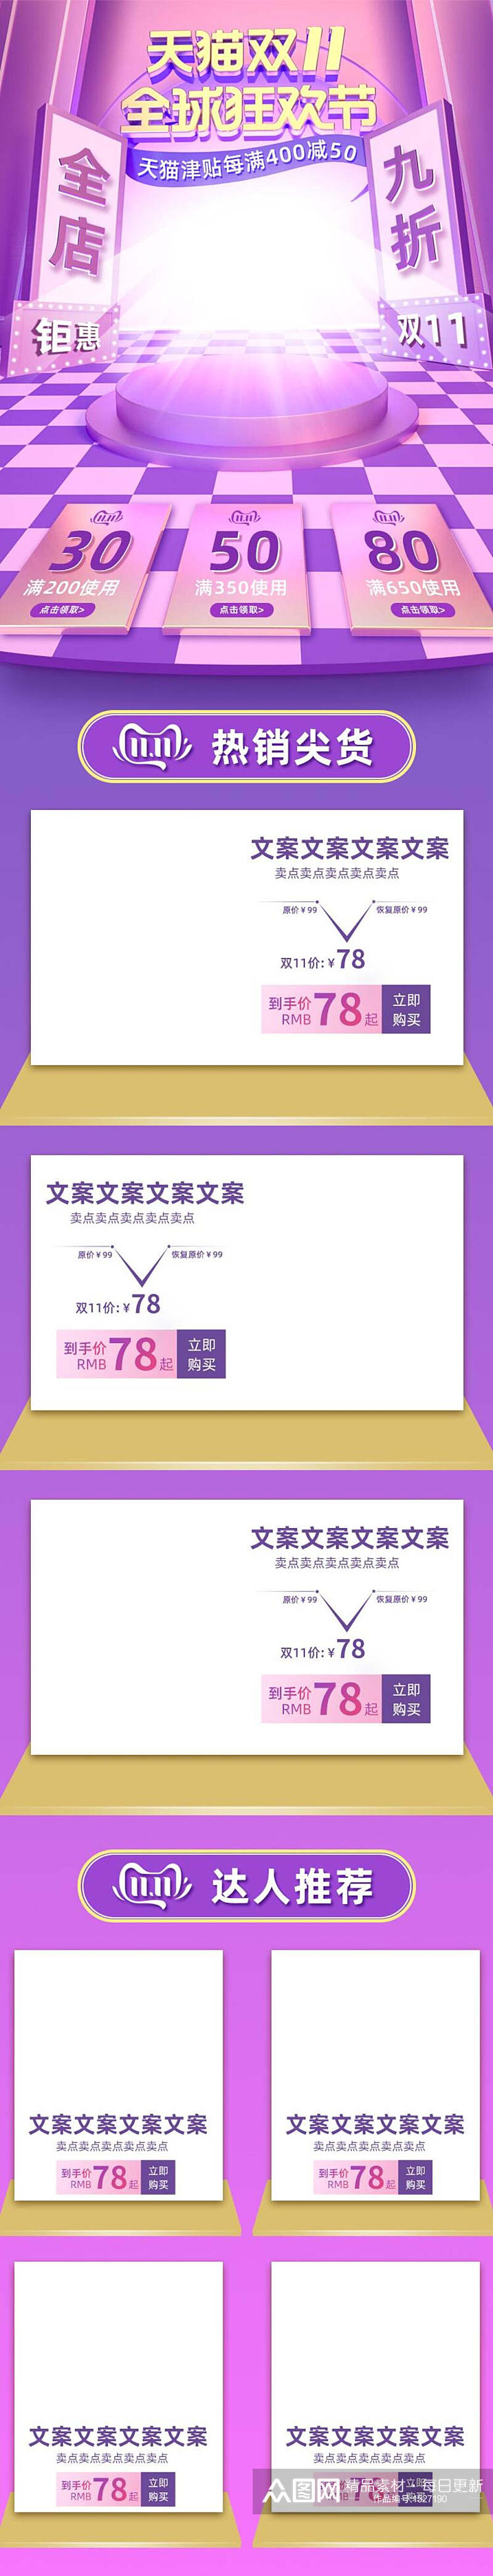 紫色天猫双十一全球狂欢节电商详情页设计素材